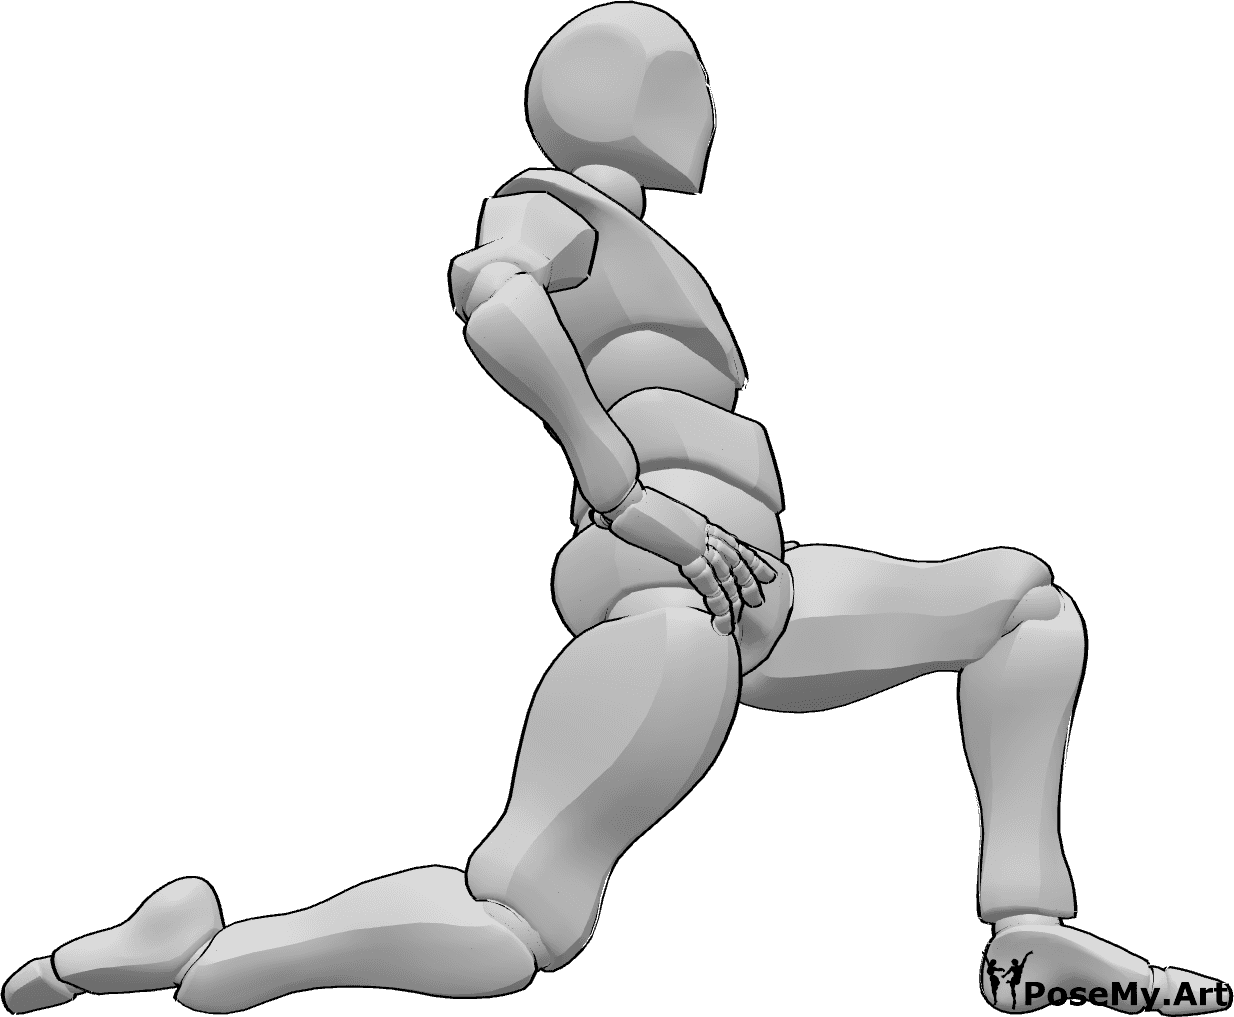 Riferimento alle pose- Posizione di stretching in ginocchio - L'uomo è inginocchiato con le mani sui fianchi e allunga il tronco e le gambe.